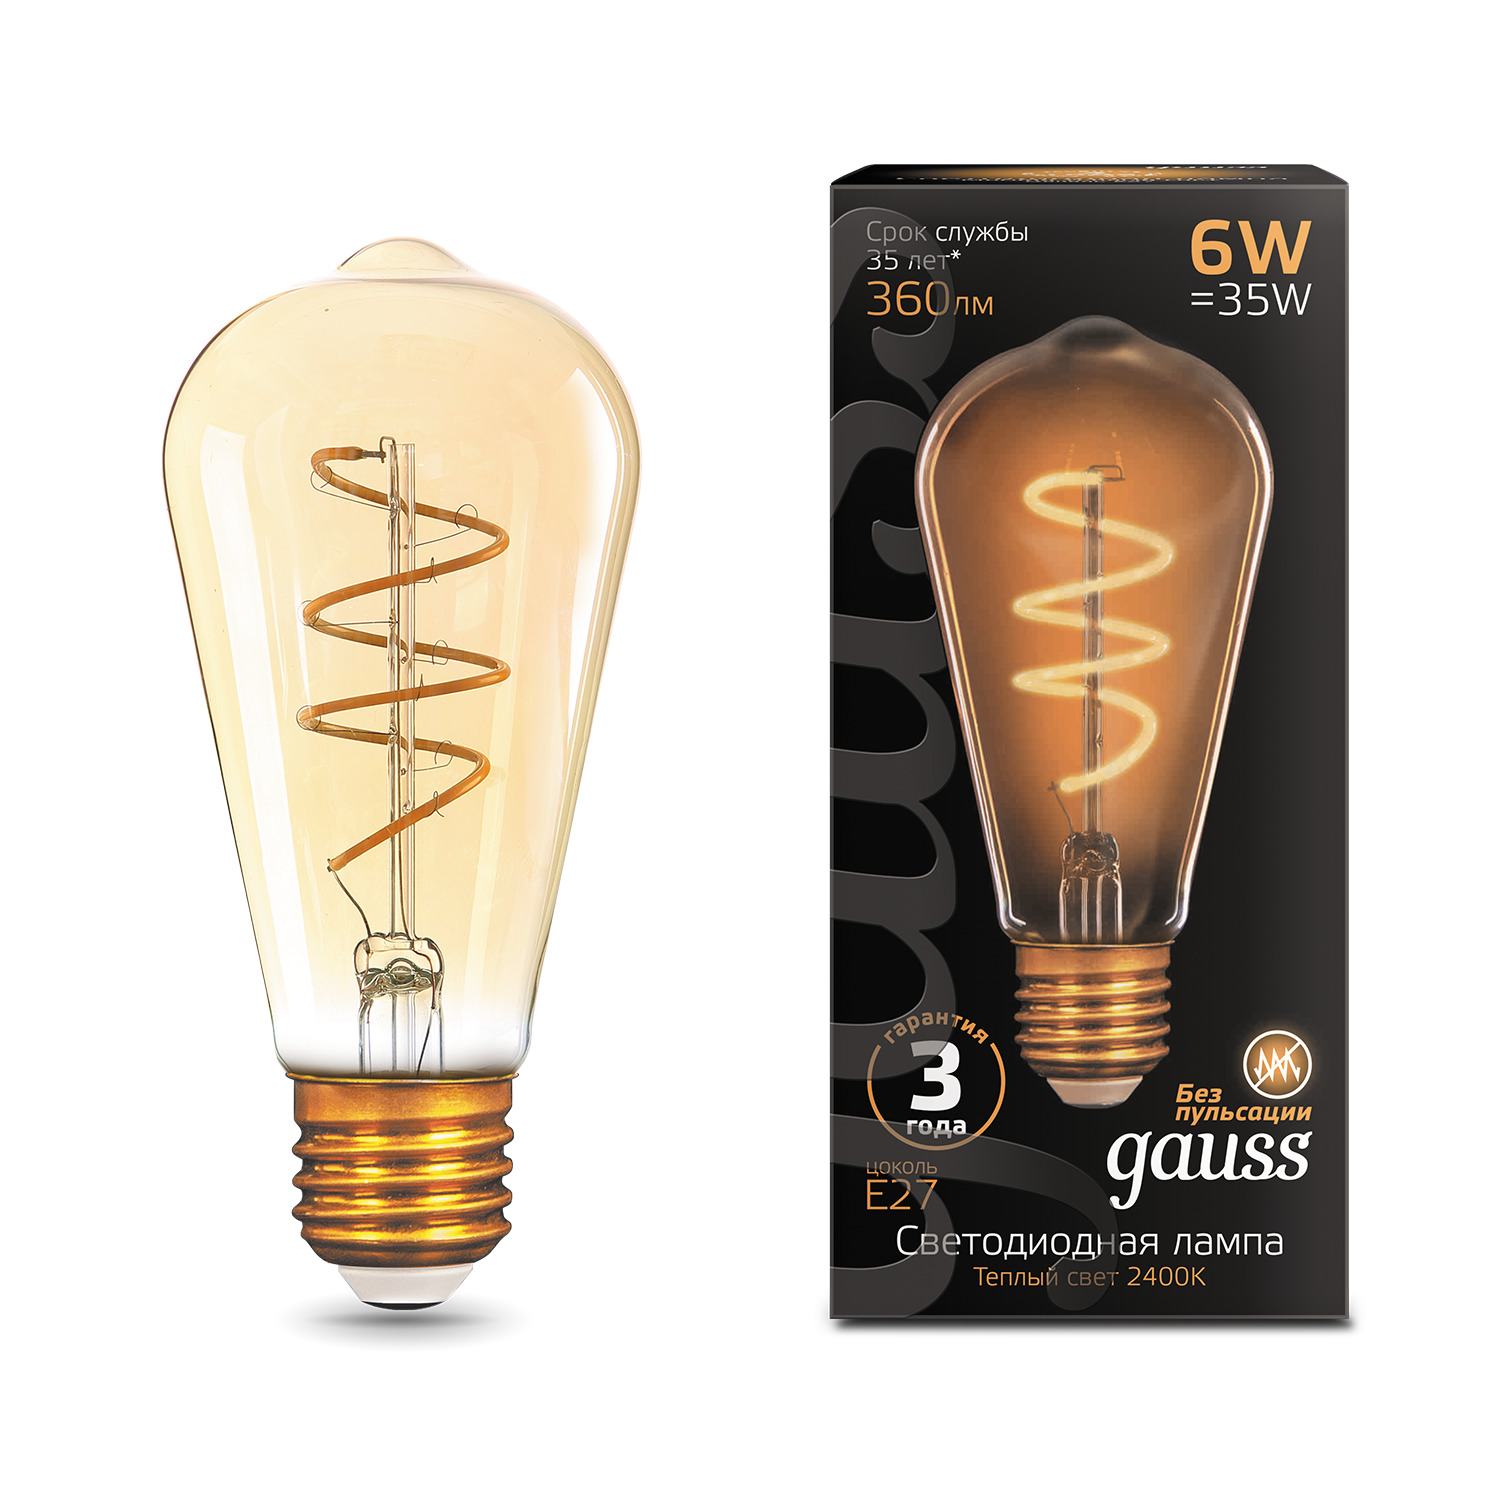 Лампа Gauss LED Filament ST64 Flexible E27 6W Golden 360lm 2400К 1/10/40 лампа gauss led filament st64 flexible e27 6w golden 360lm 2400к 157802006